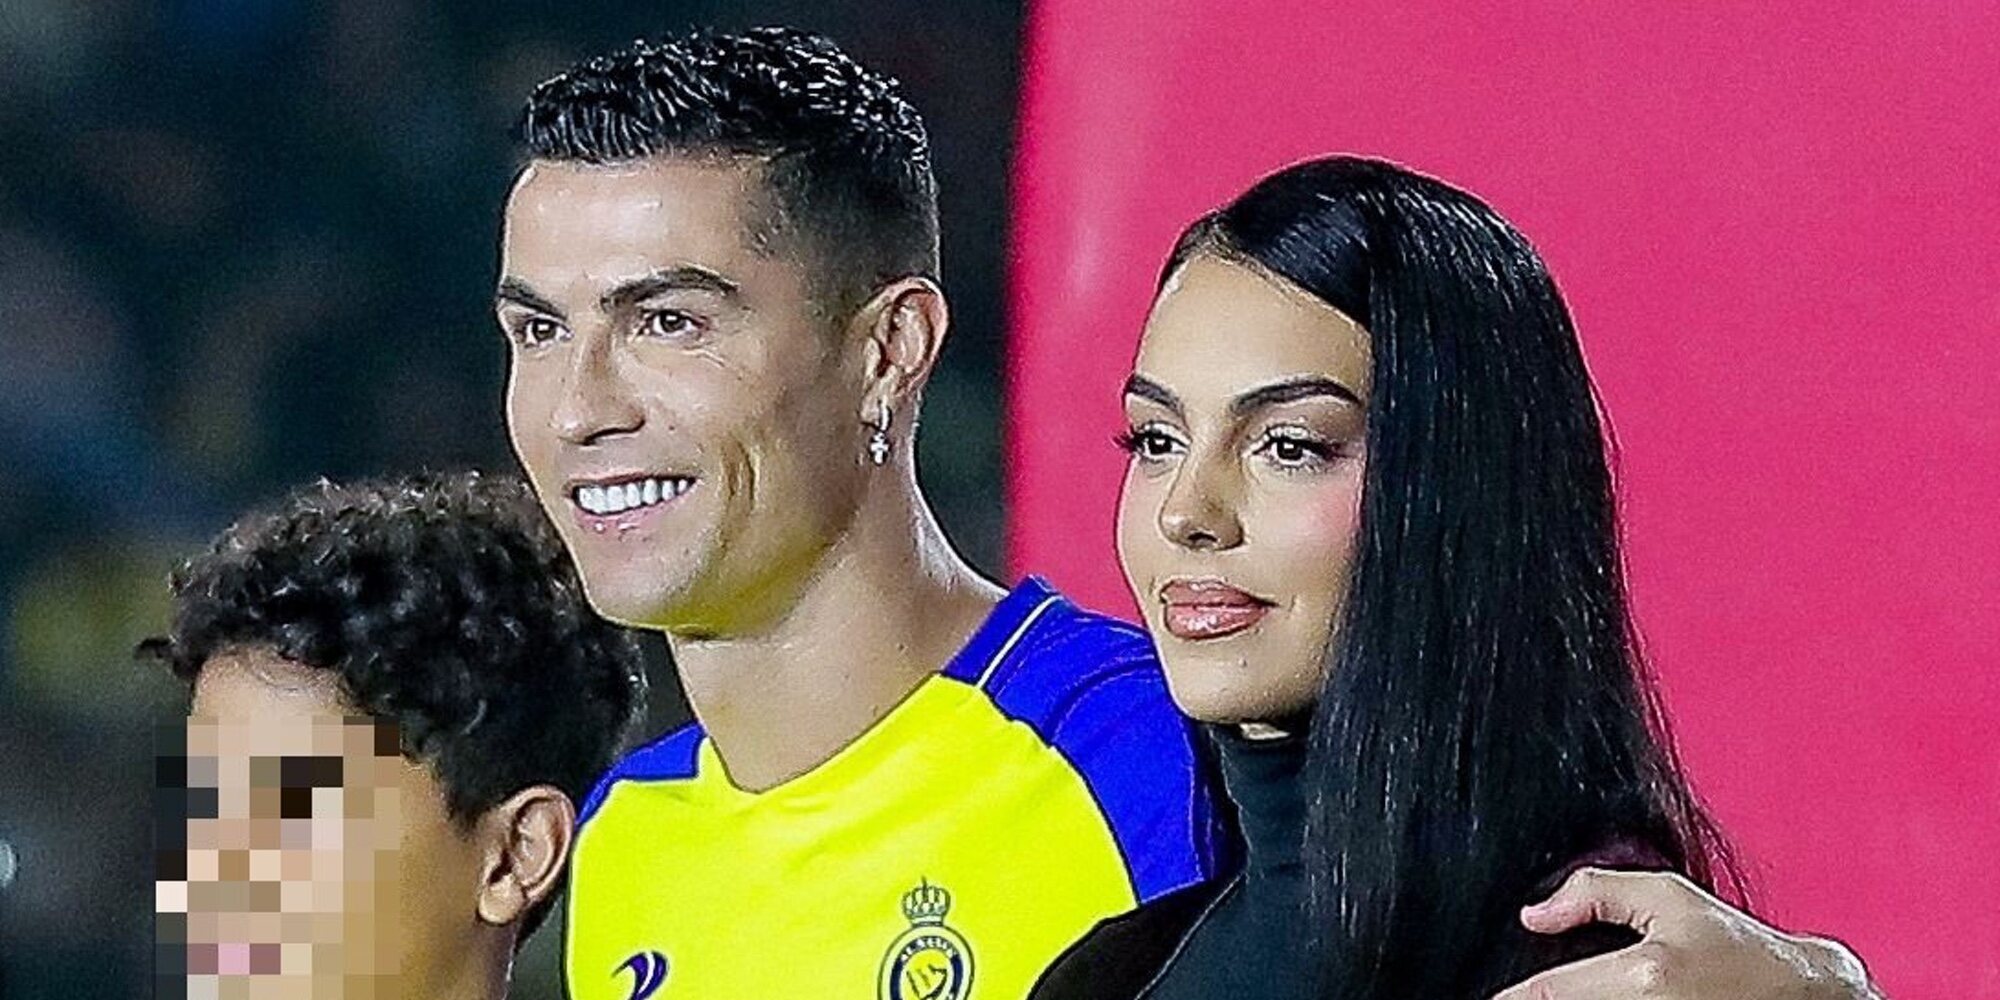 Cristiano Ronaldo y Georgina Rodríguez vivirán juntos aunque las leyes de Arabia Saudí no lo permitan